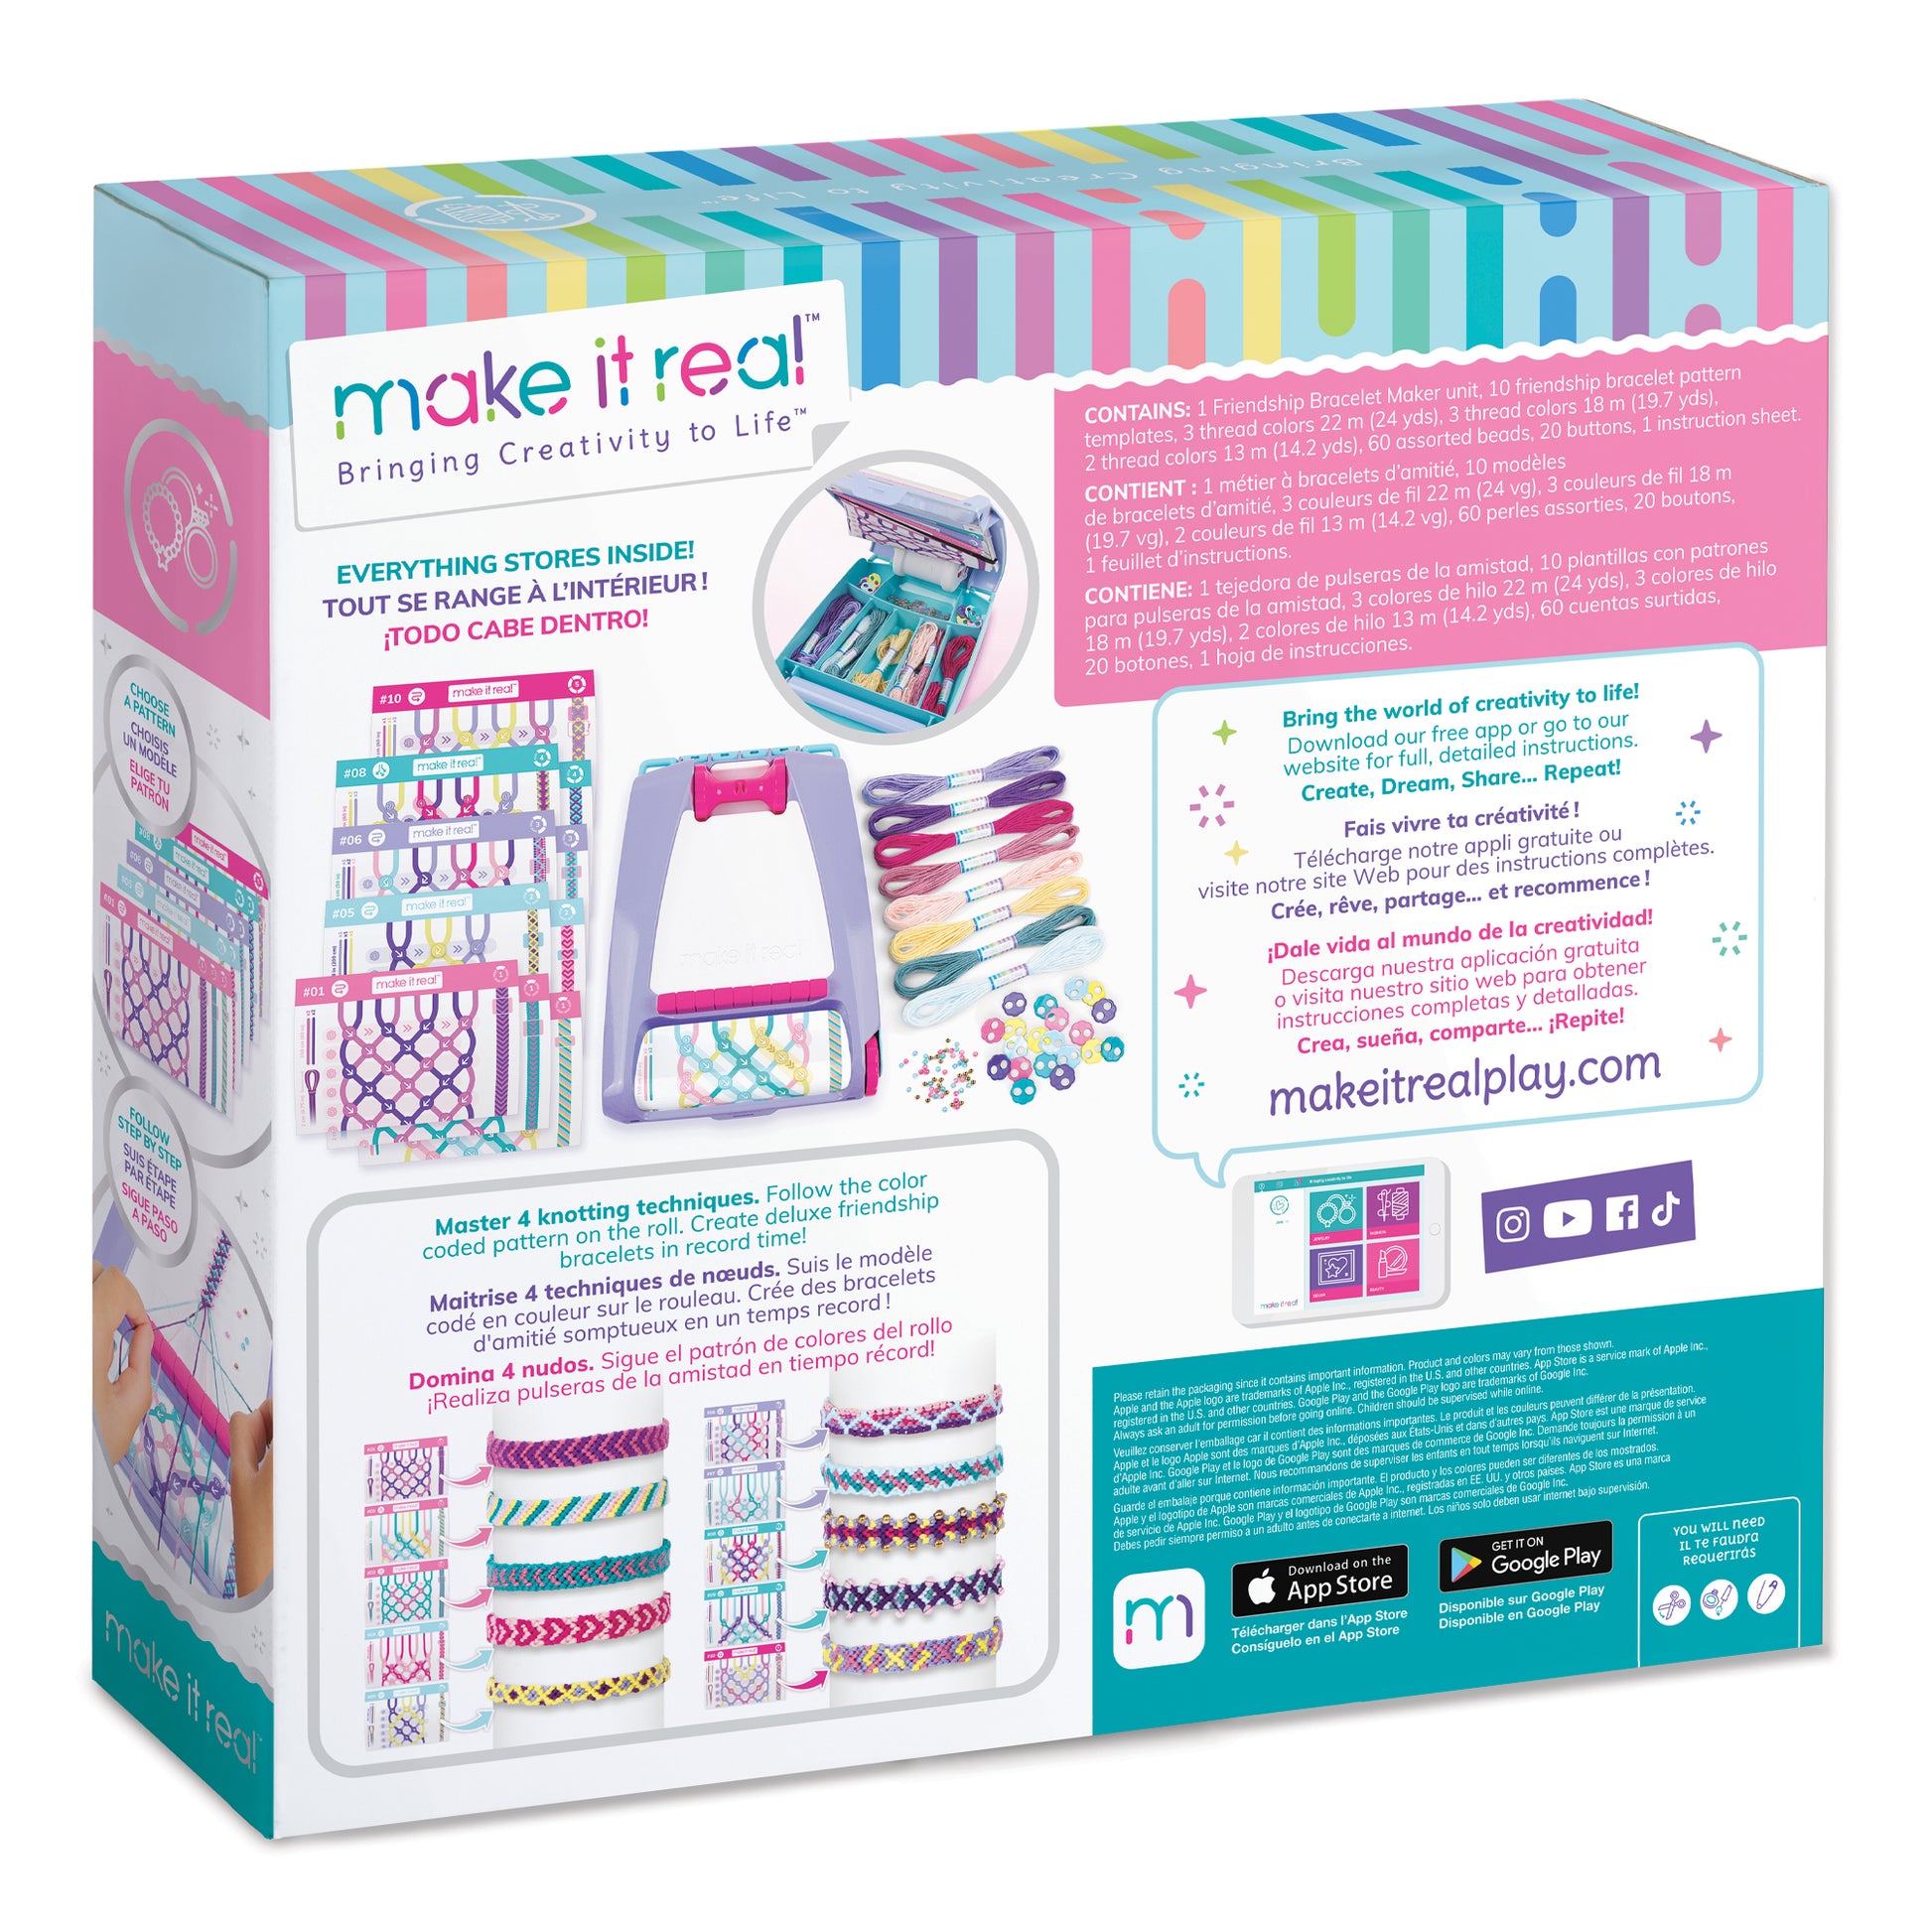  Make It Real - Macrame Friendship Bracelet Making Kit for Girls  - Kids String Bracelet Making Kit - Friendship Bracelet Craft Kit w/Thread,  Beads & More - DIY Bracelet Kit for